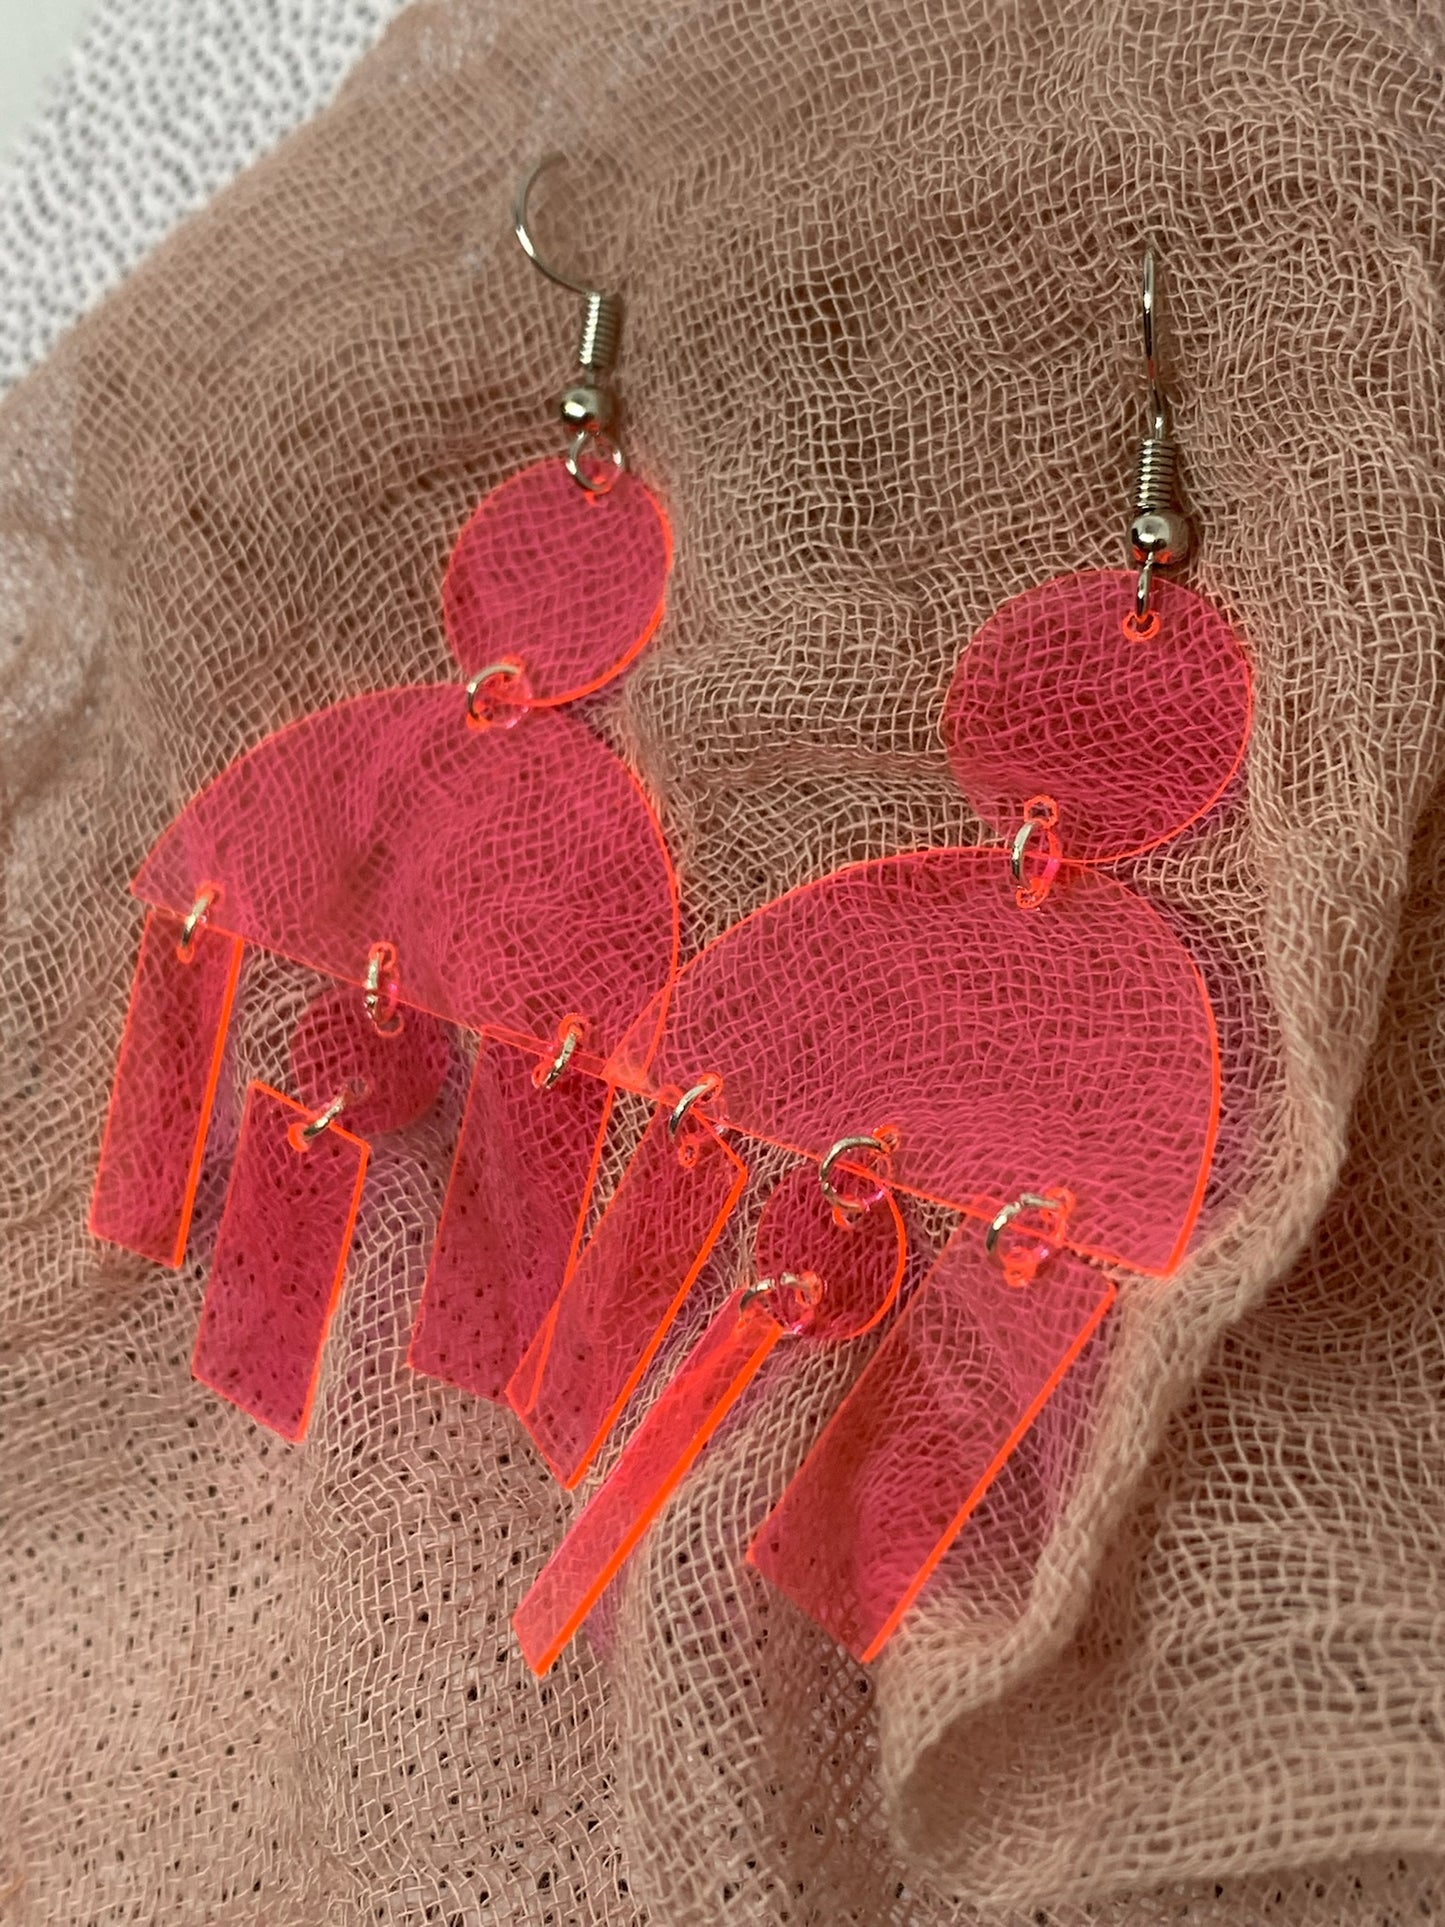 Pink Acrylic Earrings